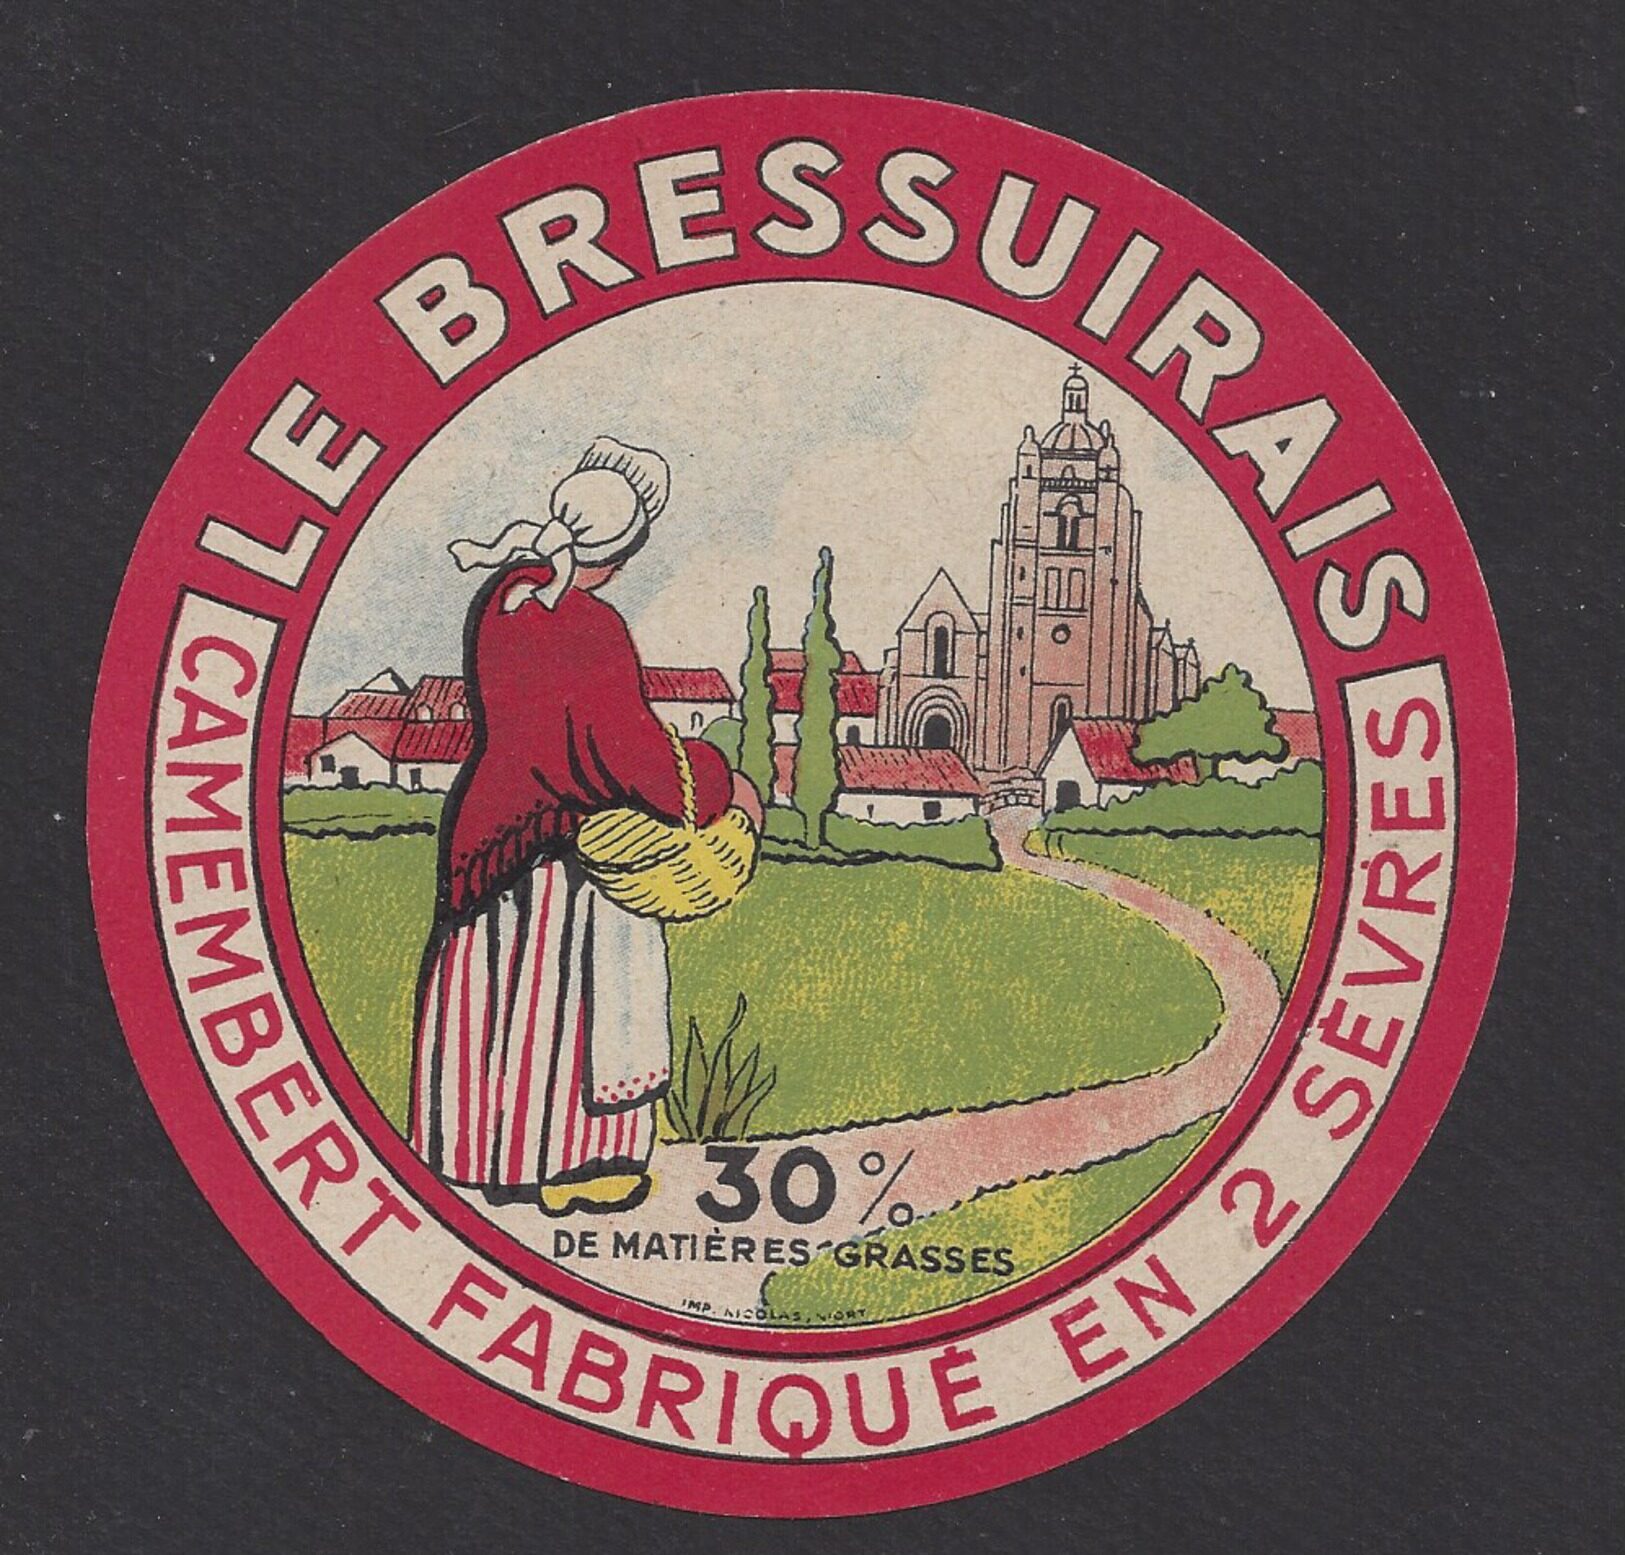 Lire la suite à propos de l’article « Le Bressuirais », un fromage inconnu ?